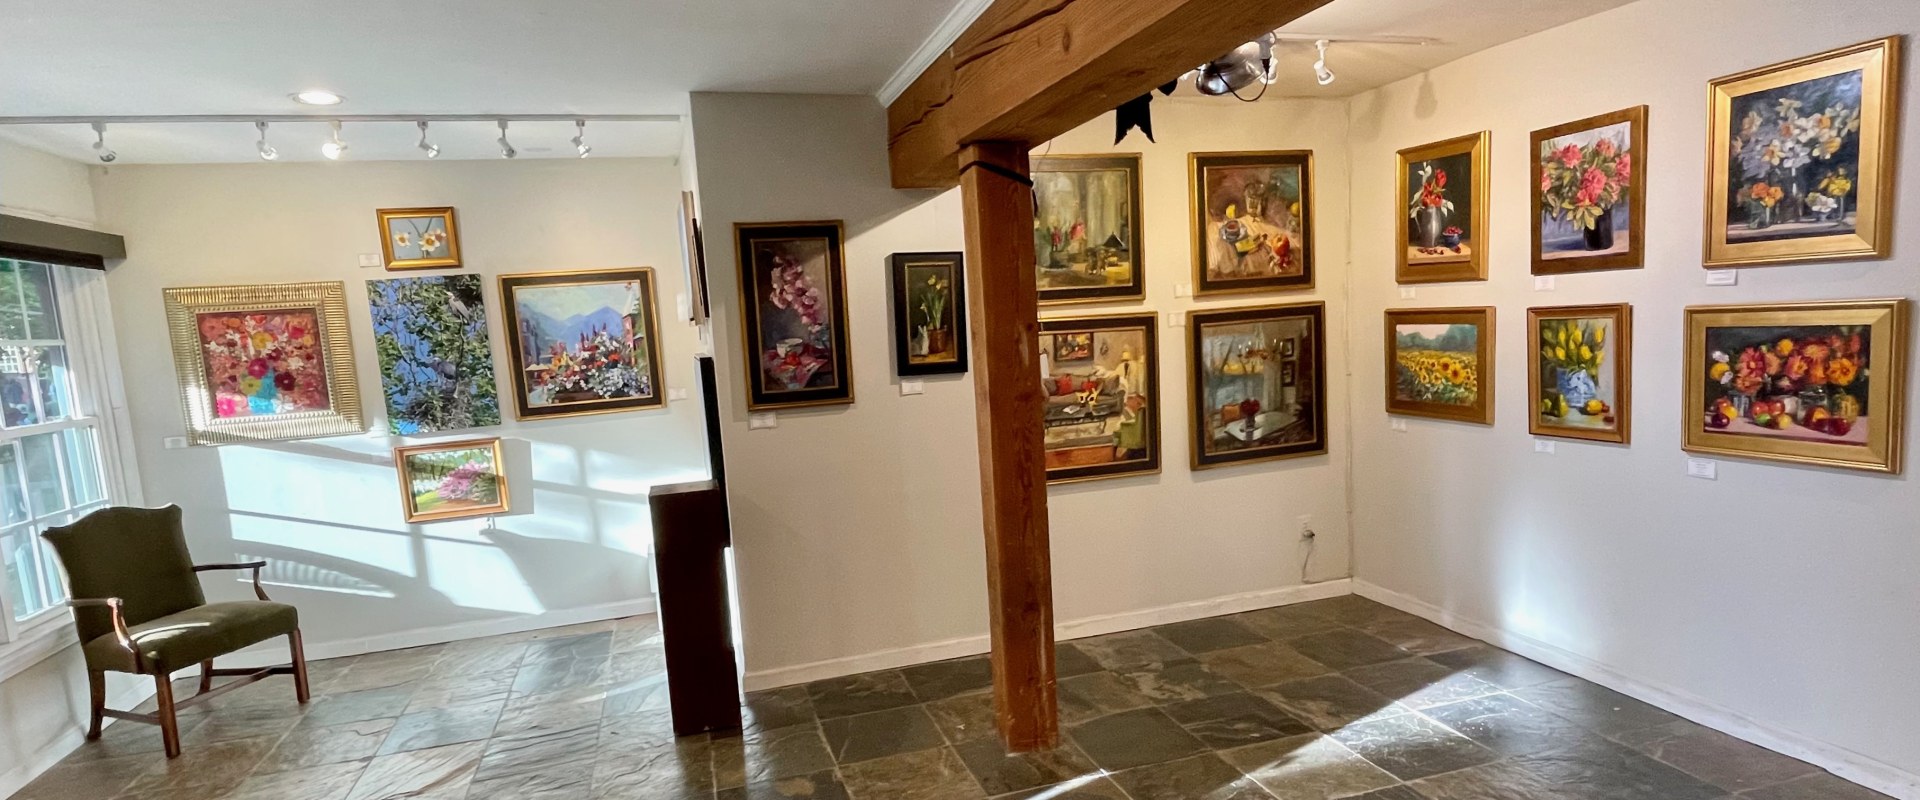 Do Art Galleries in Manassas, VA Have a Children's Policy?